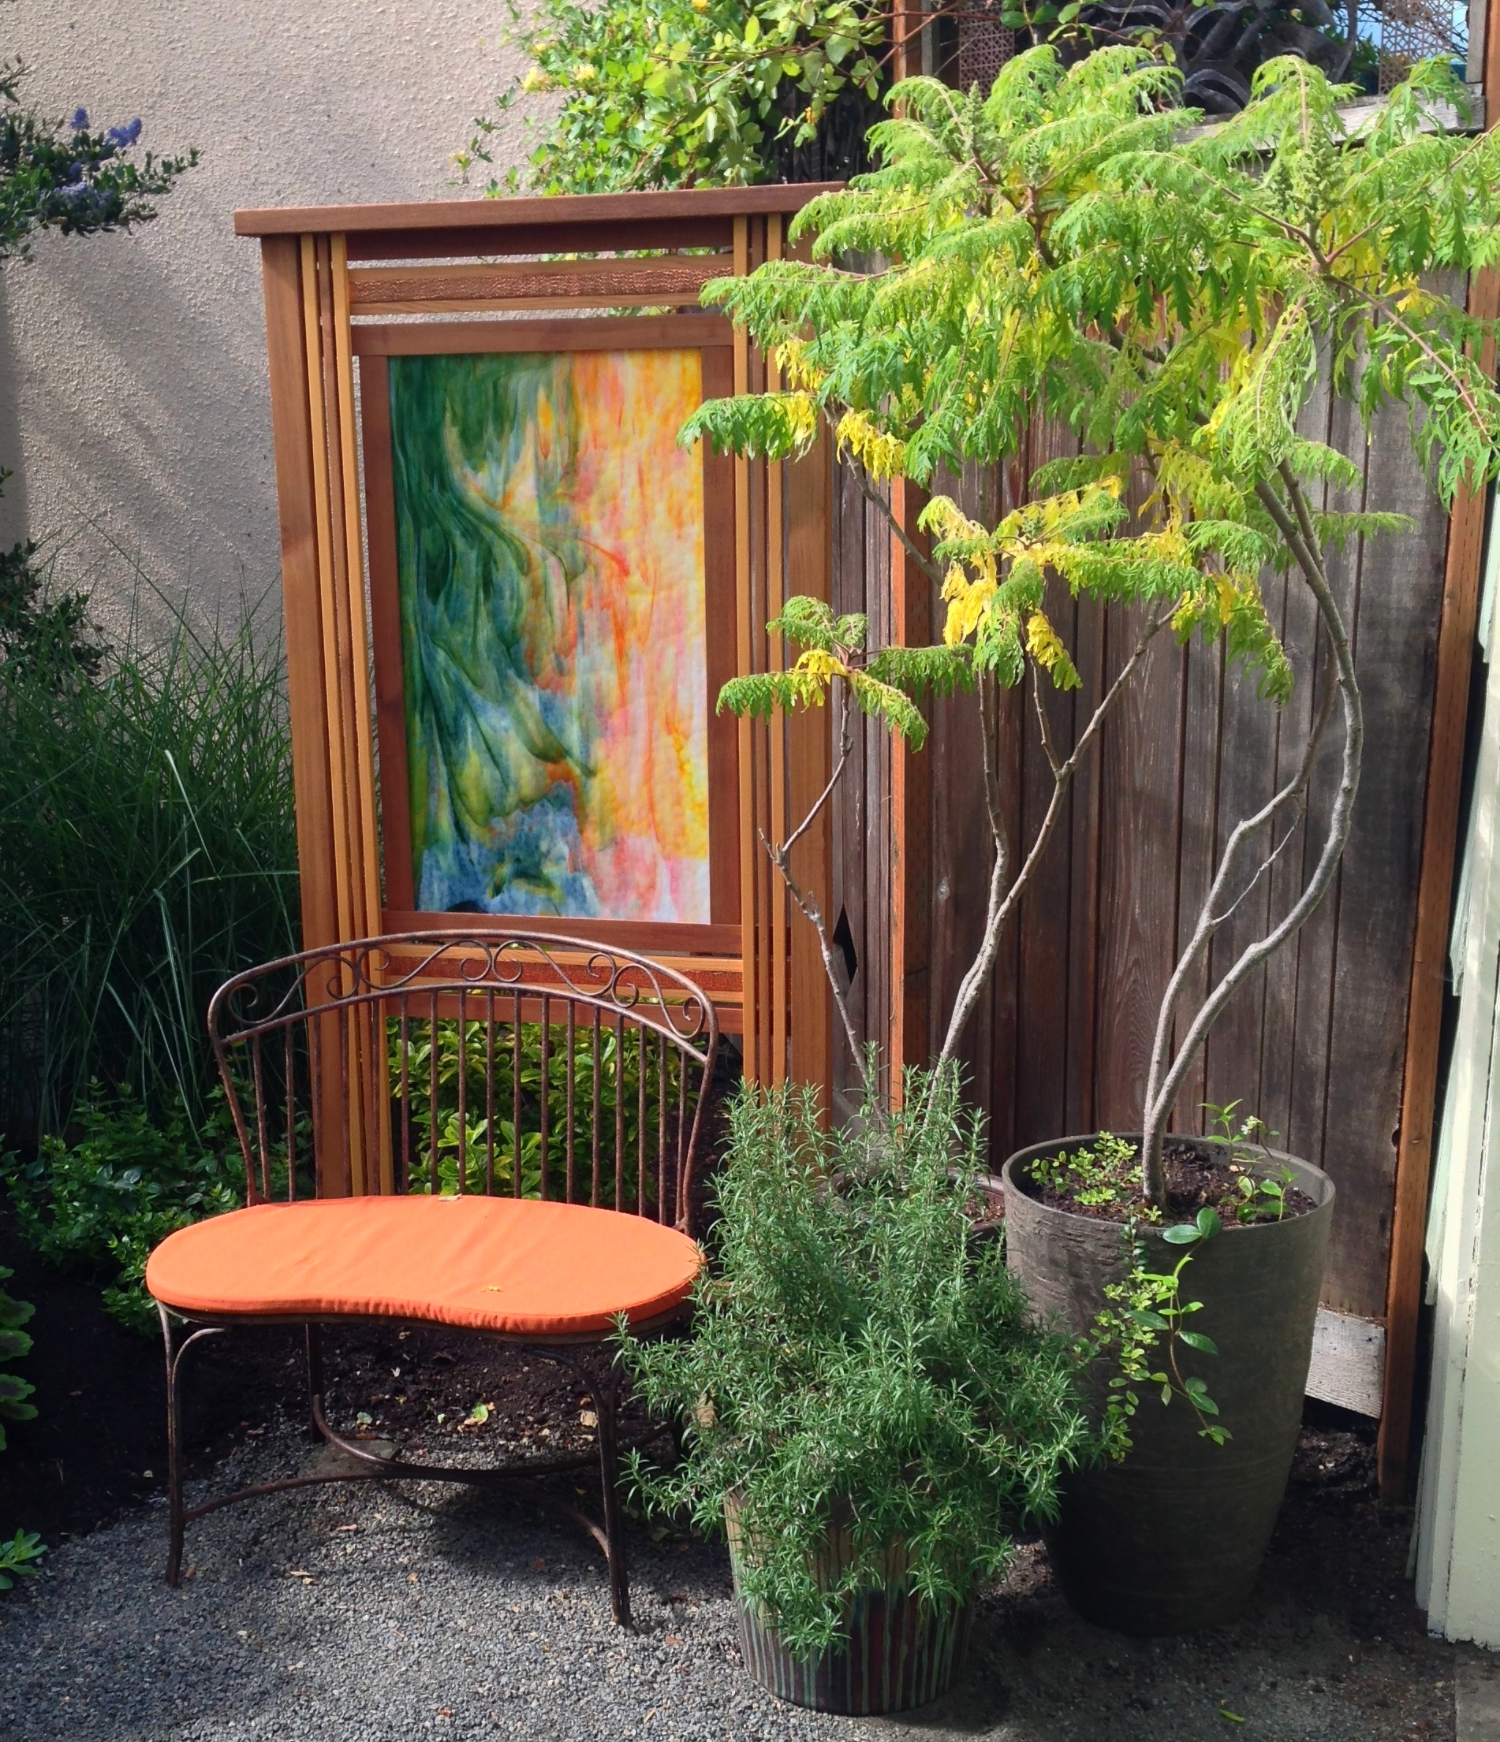 完成的构图:长凳，屏风，三个花盆，三种主要植物，都是中性色调，绿色和橙色。